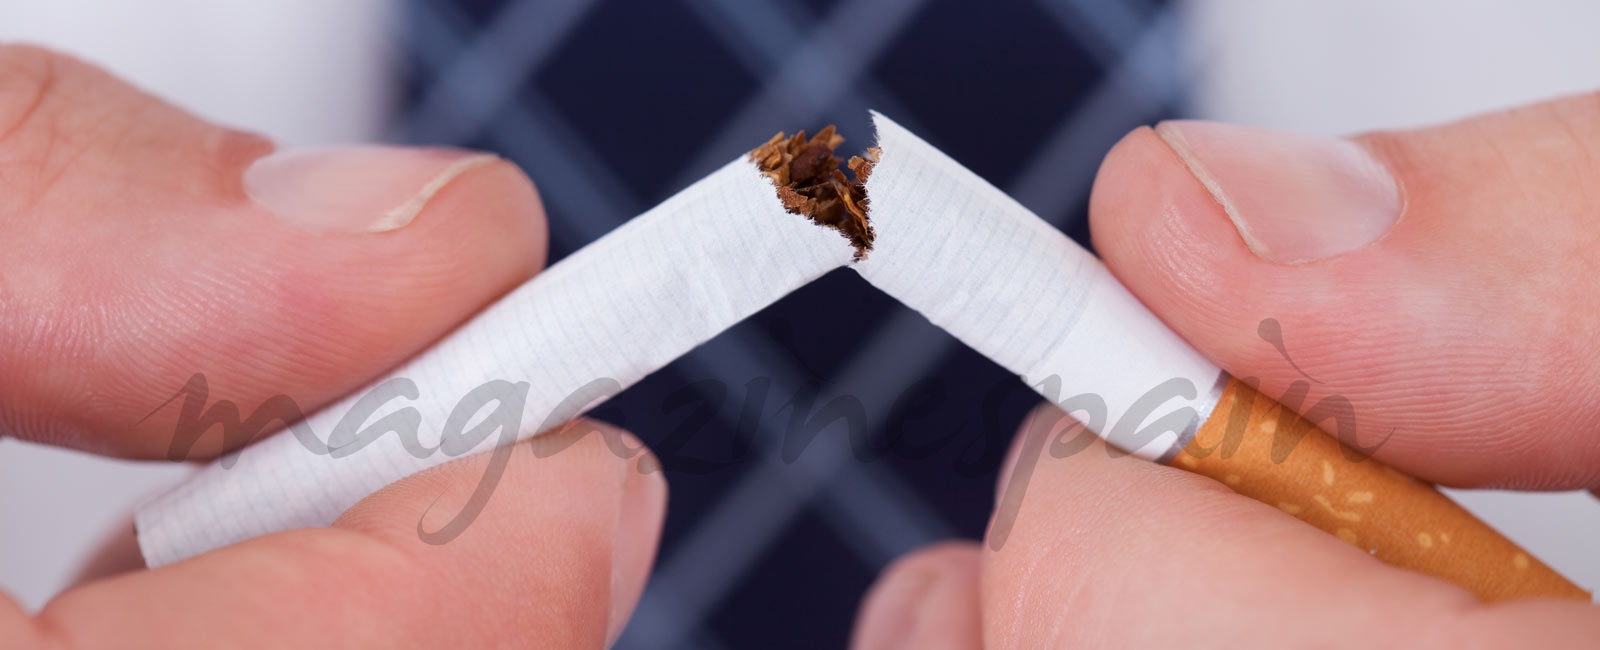 Día Mundial sin tabaco: Así nos afecta